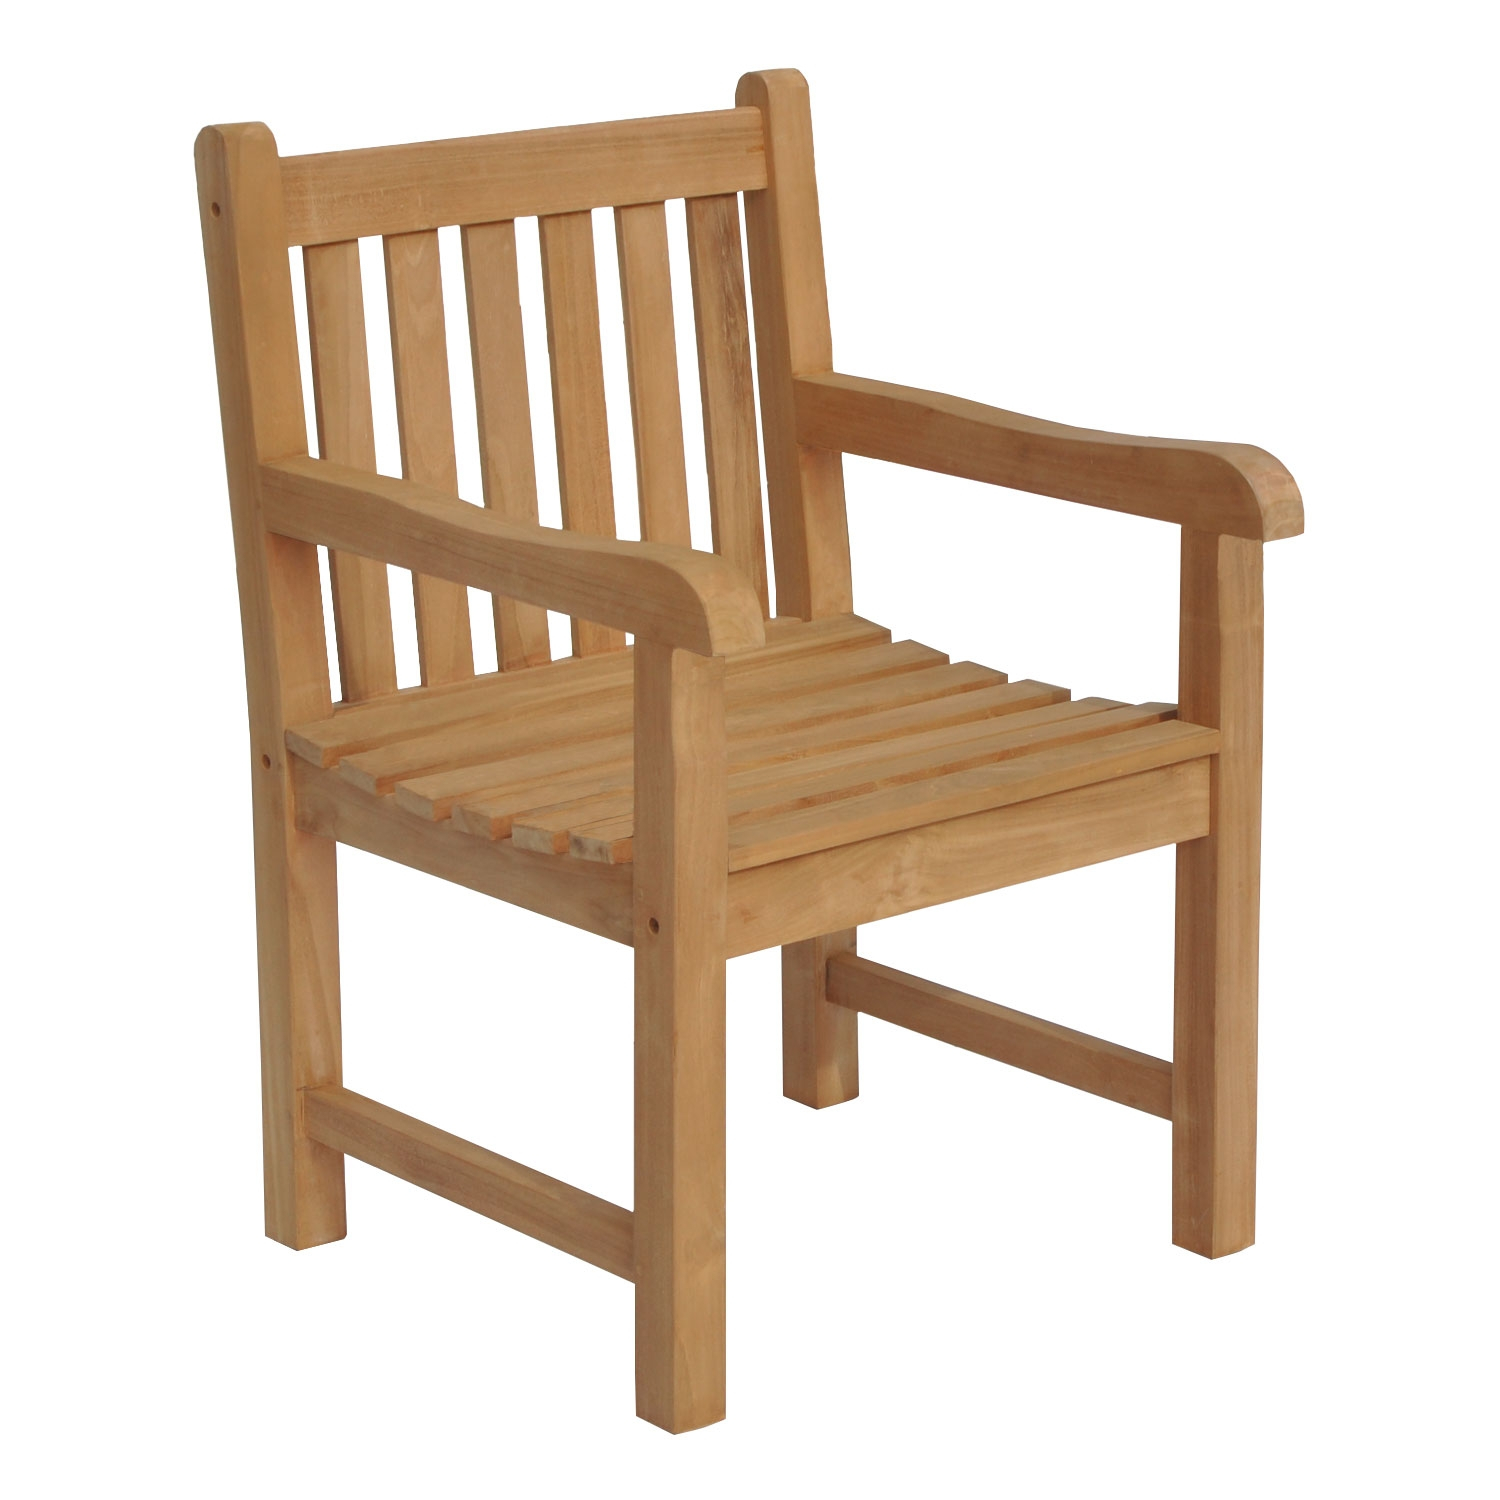 Fauteuil jardin exterieur teck, chaise jardin coloré accoudoir bois